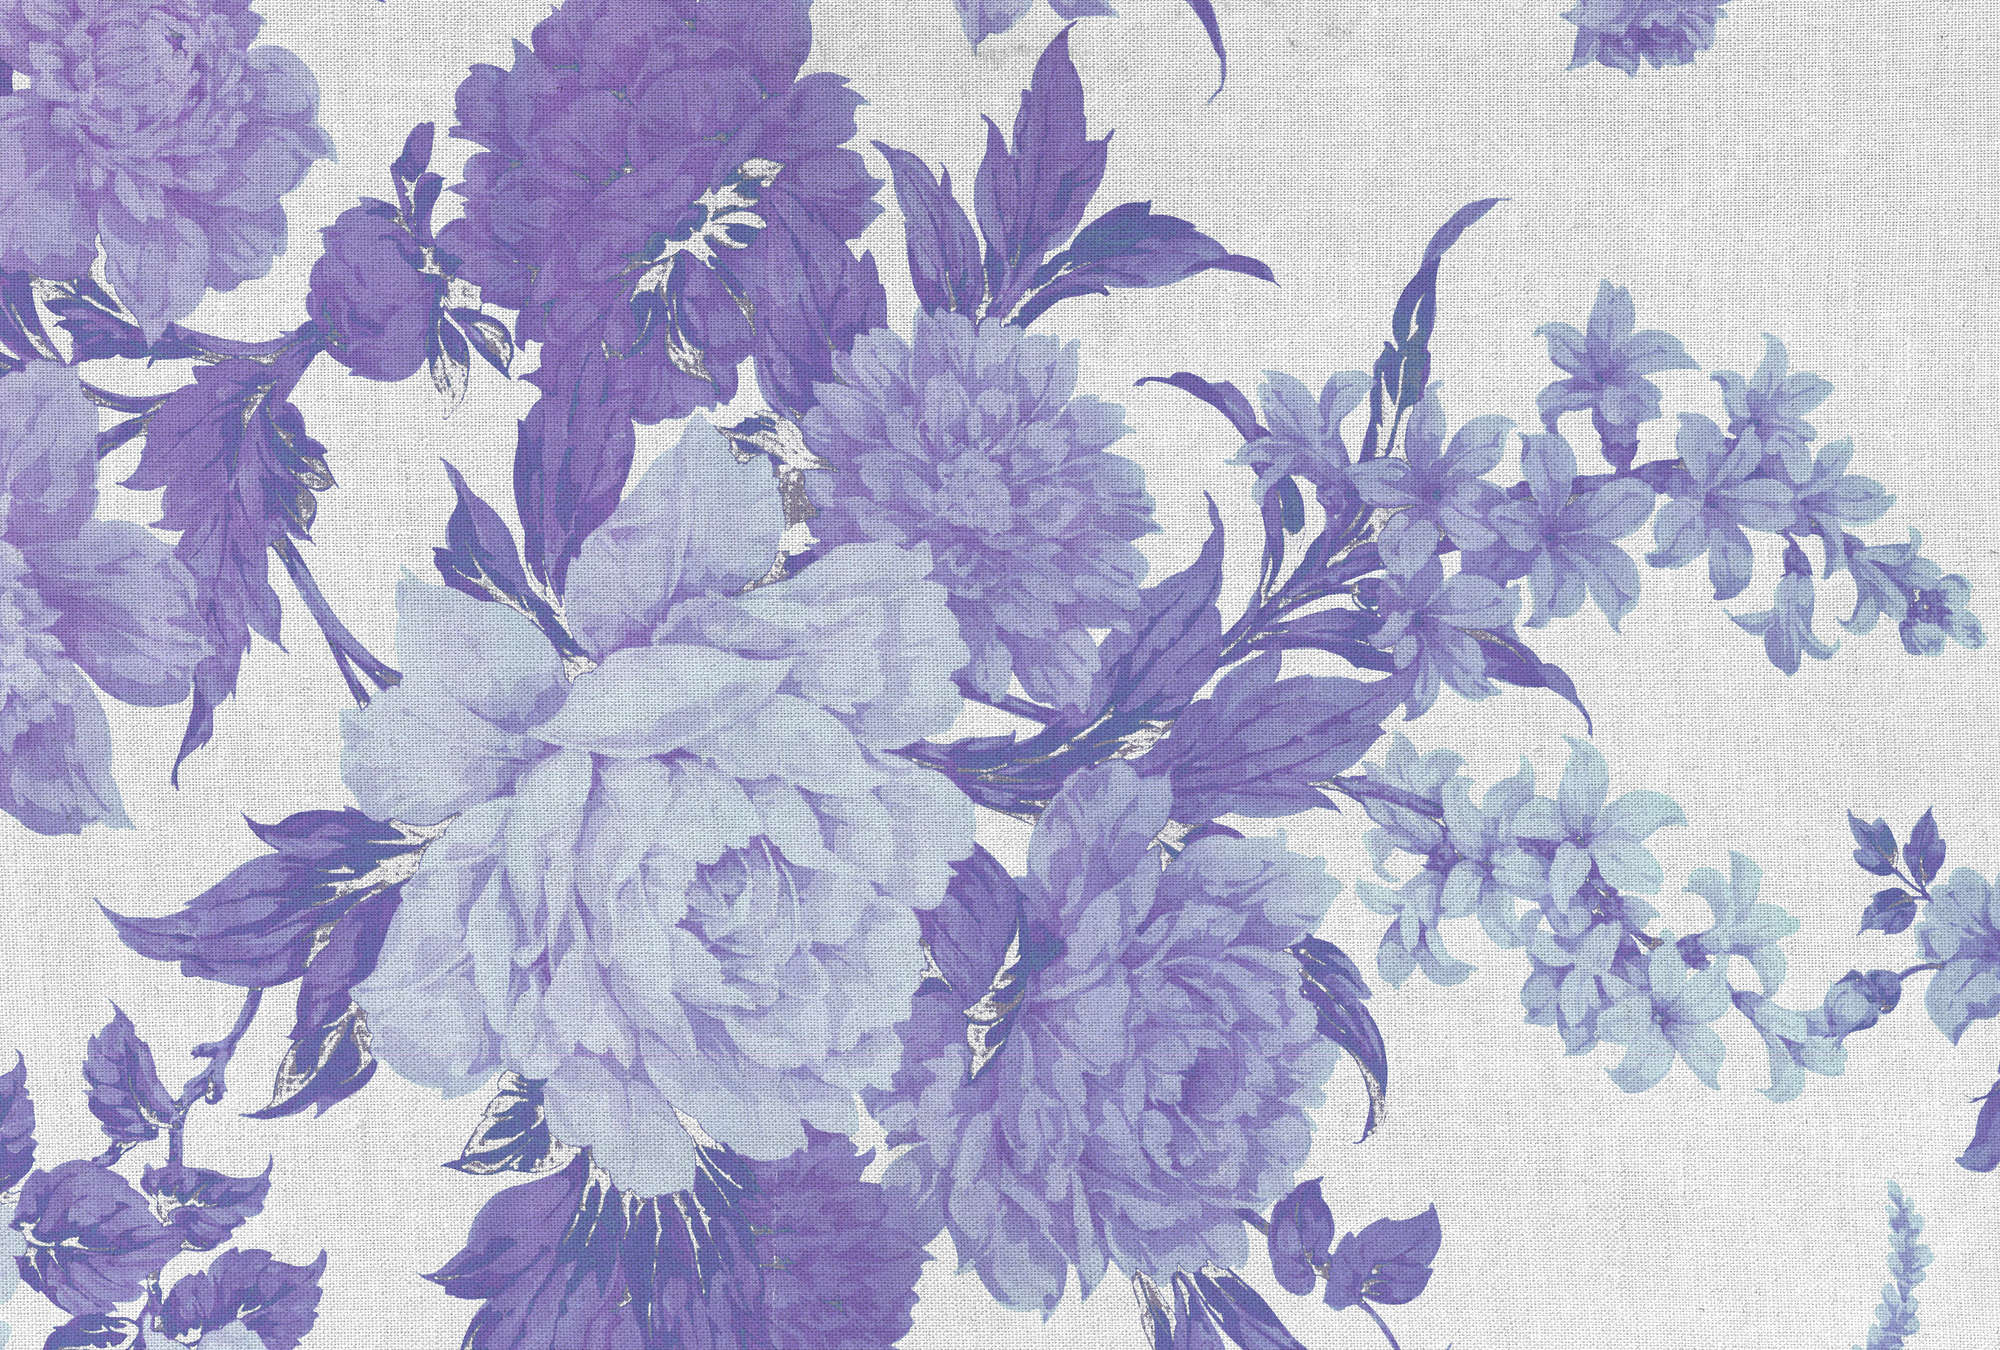             Papier peint Roses, ornement floral & look textile - violet, bleu, blanc
        